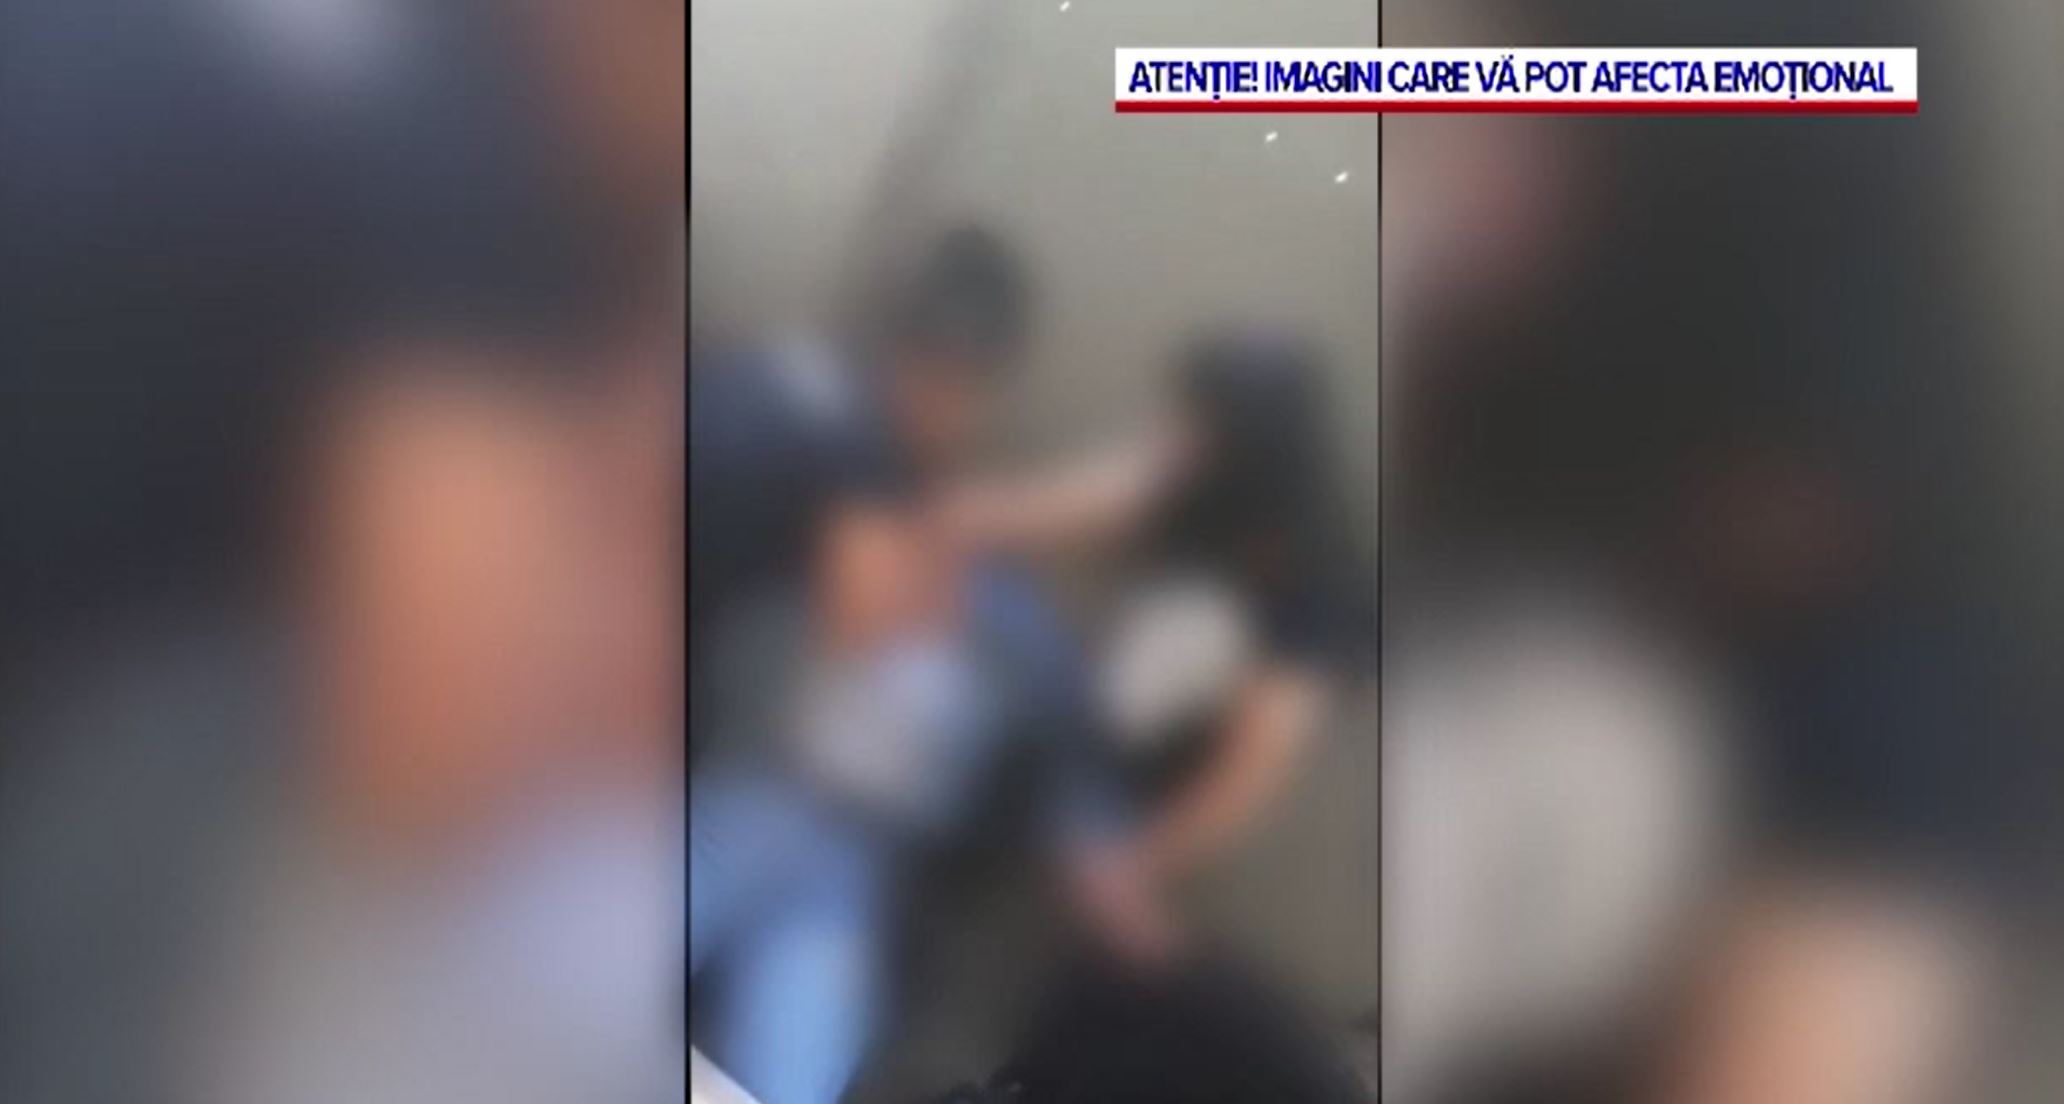 Mama fetei care a fost lovită într-un liceu din Timișoara face dezvăluiri șocante: ”I-au dat foc cu bricheta”